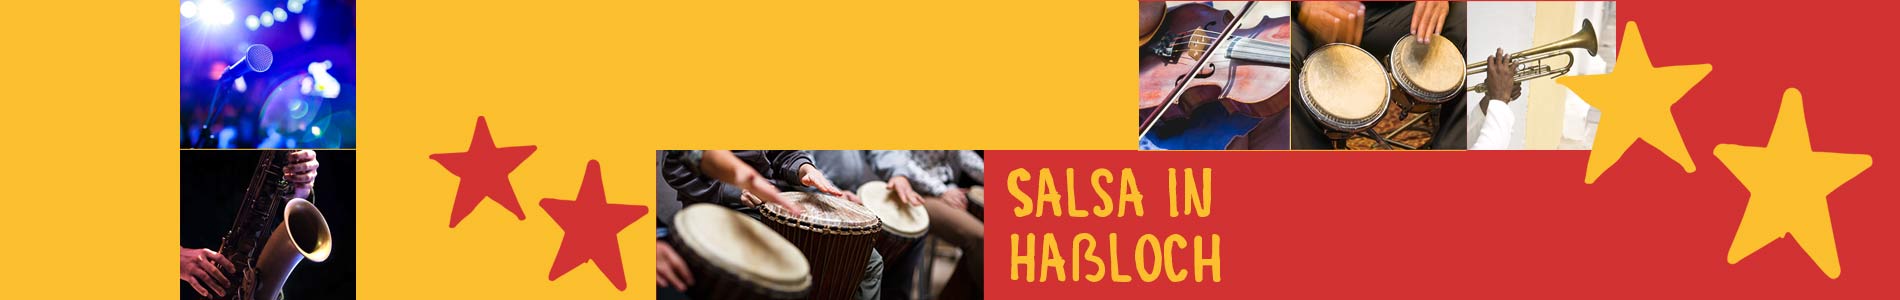 Salsa in Haßloch – Salsa lernen und tanzen, Tanzkurse, Partys, Veranstaltungen